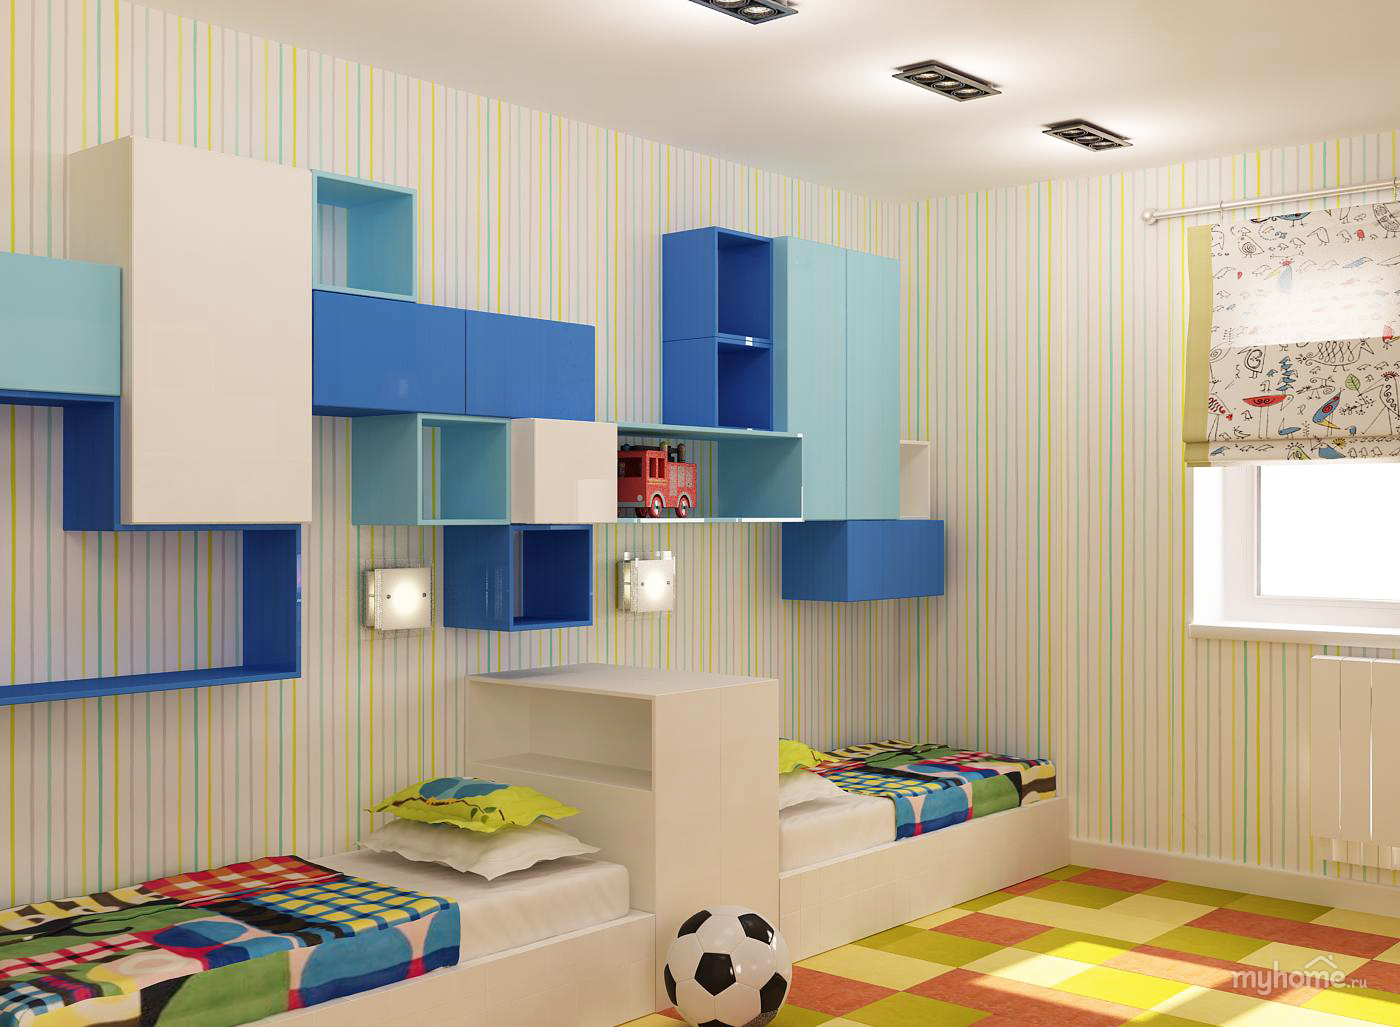 Дизайн детской комнаты в квартире для мальчика